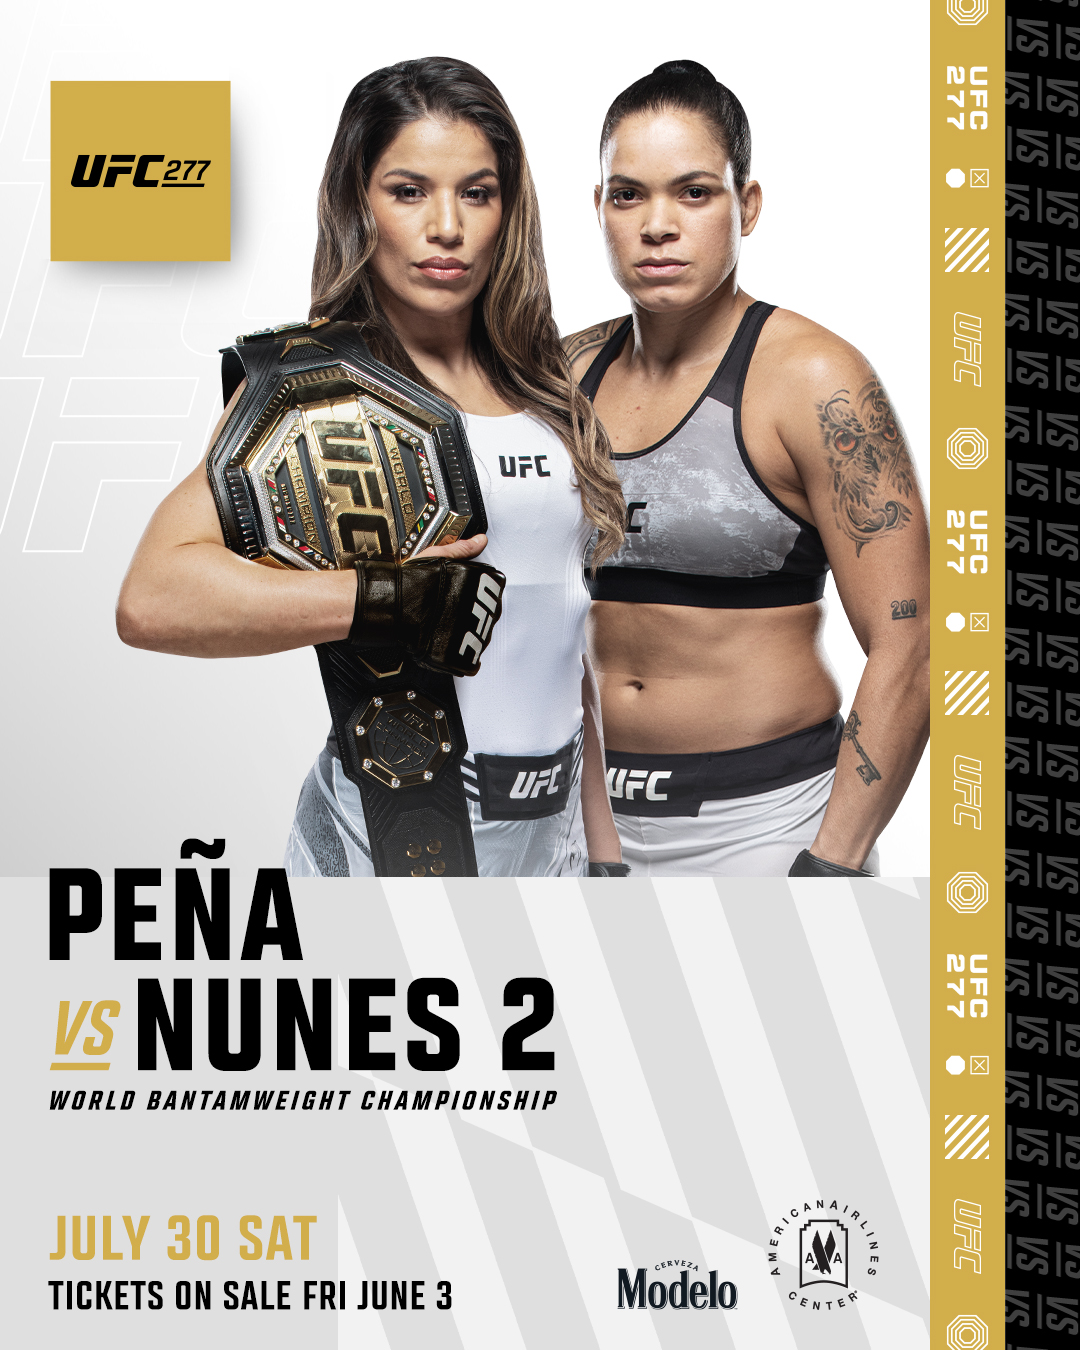 UFC 277 Fight Breakdown Julianna Pena vs